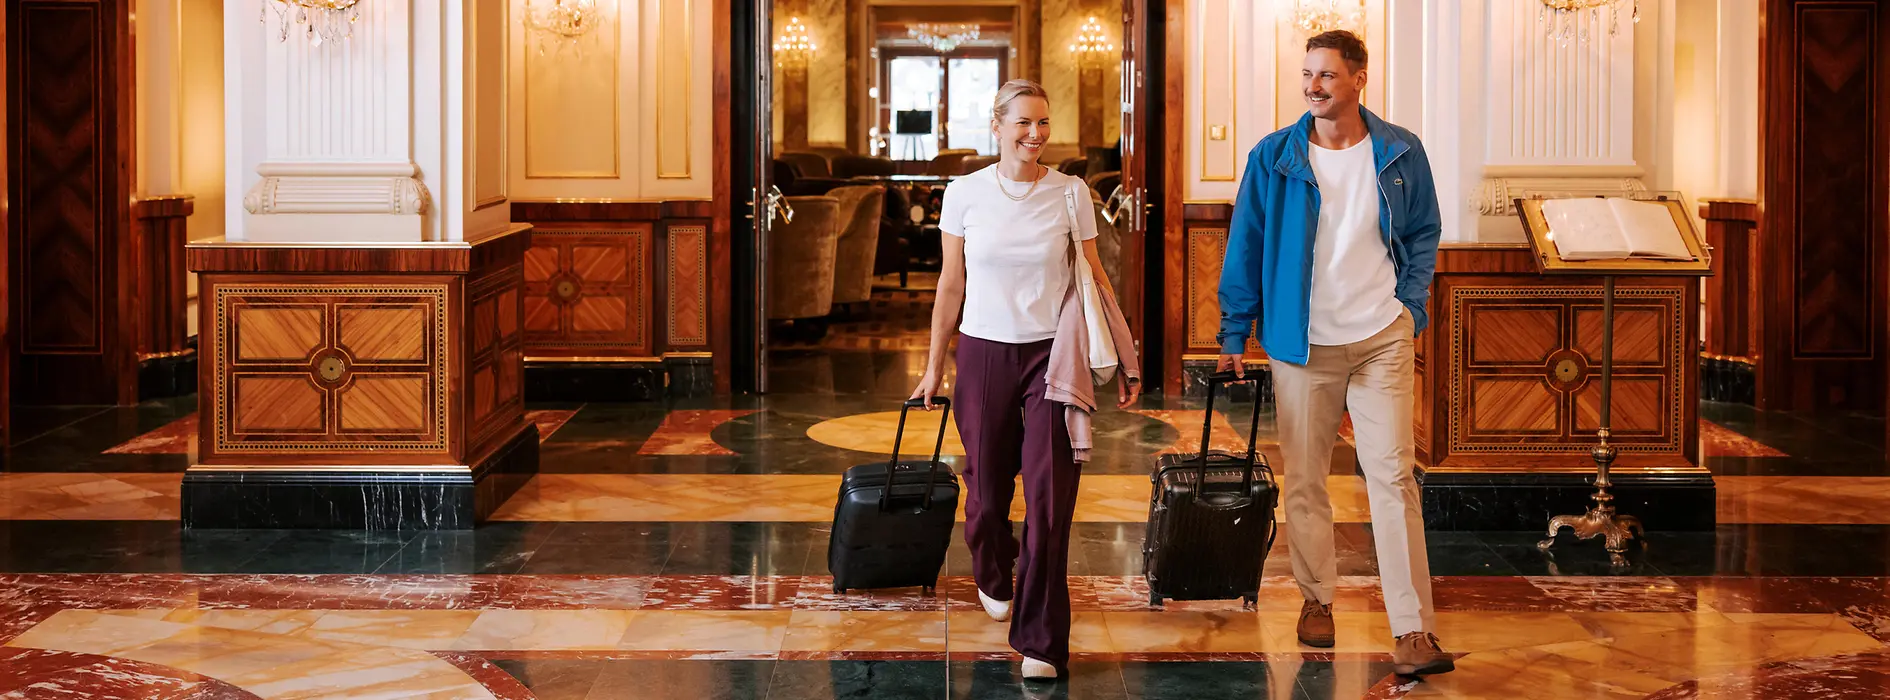 Deux femmes avec leurs bagages dans un hôtel viennois